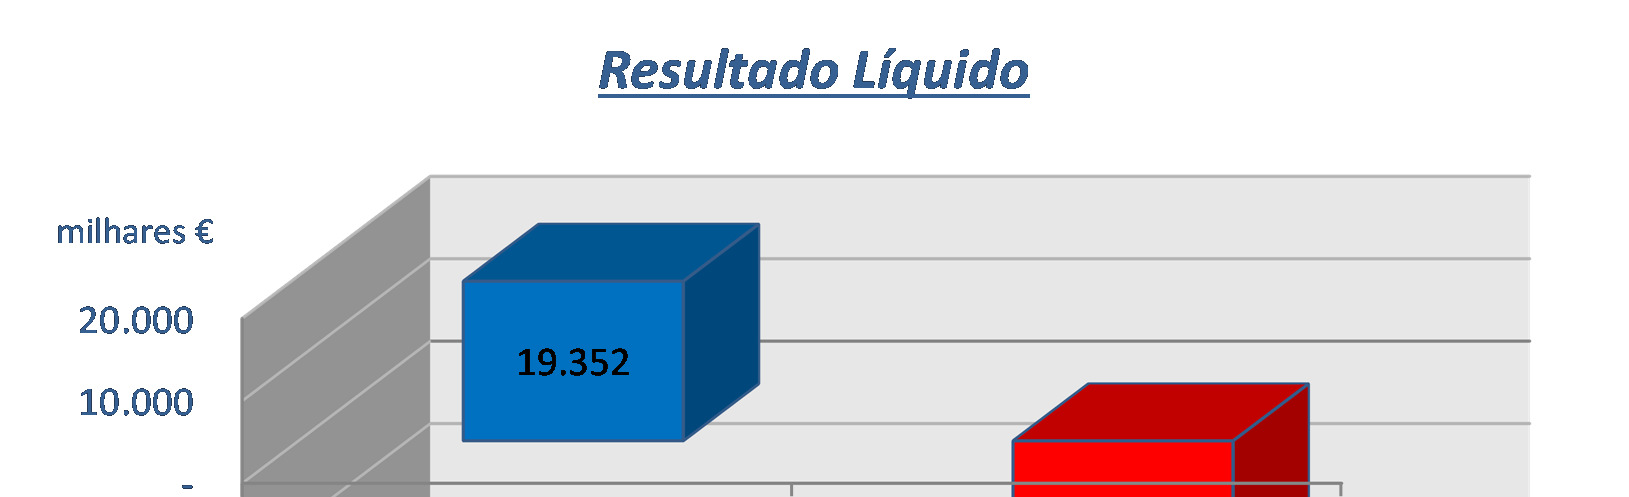 O resultado líquido da FC Porto Futebol, SAD, à semelhança de outras empresas do mesmo sector de actividade, é constituído por 3 componentes: Resultados operacionais excluindo transacções de passes